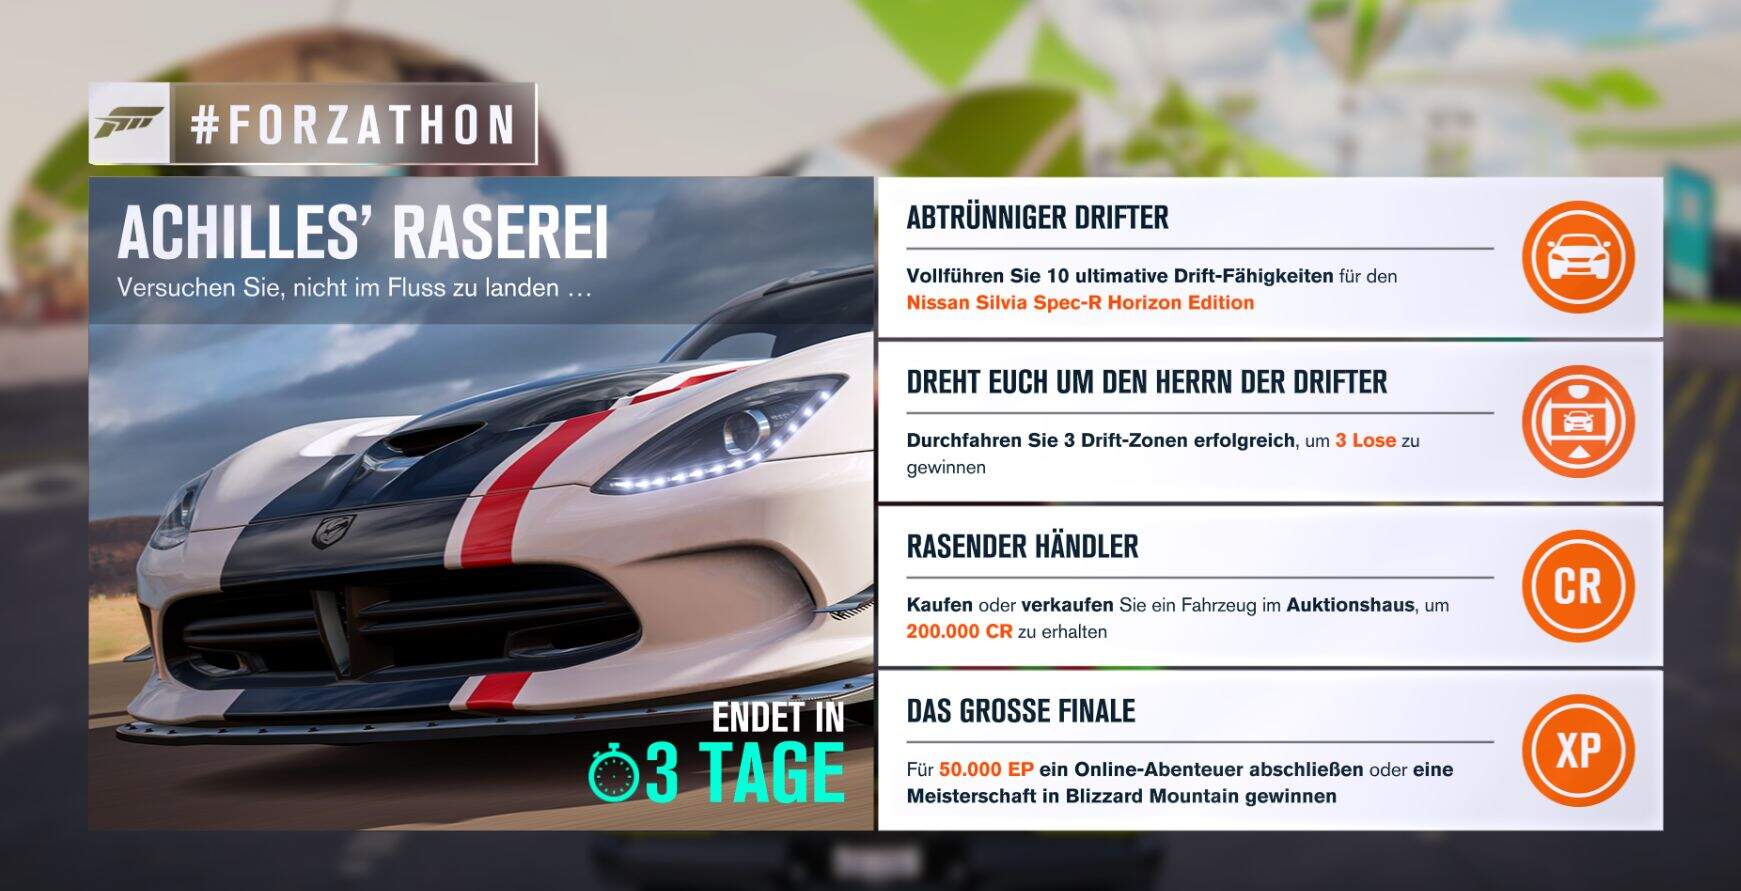 Forza Horizon 3 #Forzathon Guide KW 02 – Achilles‘ Raserei 